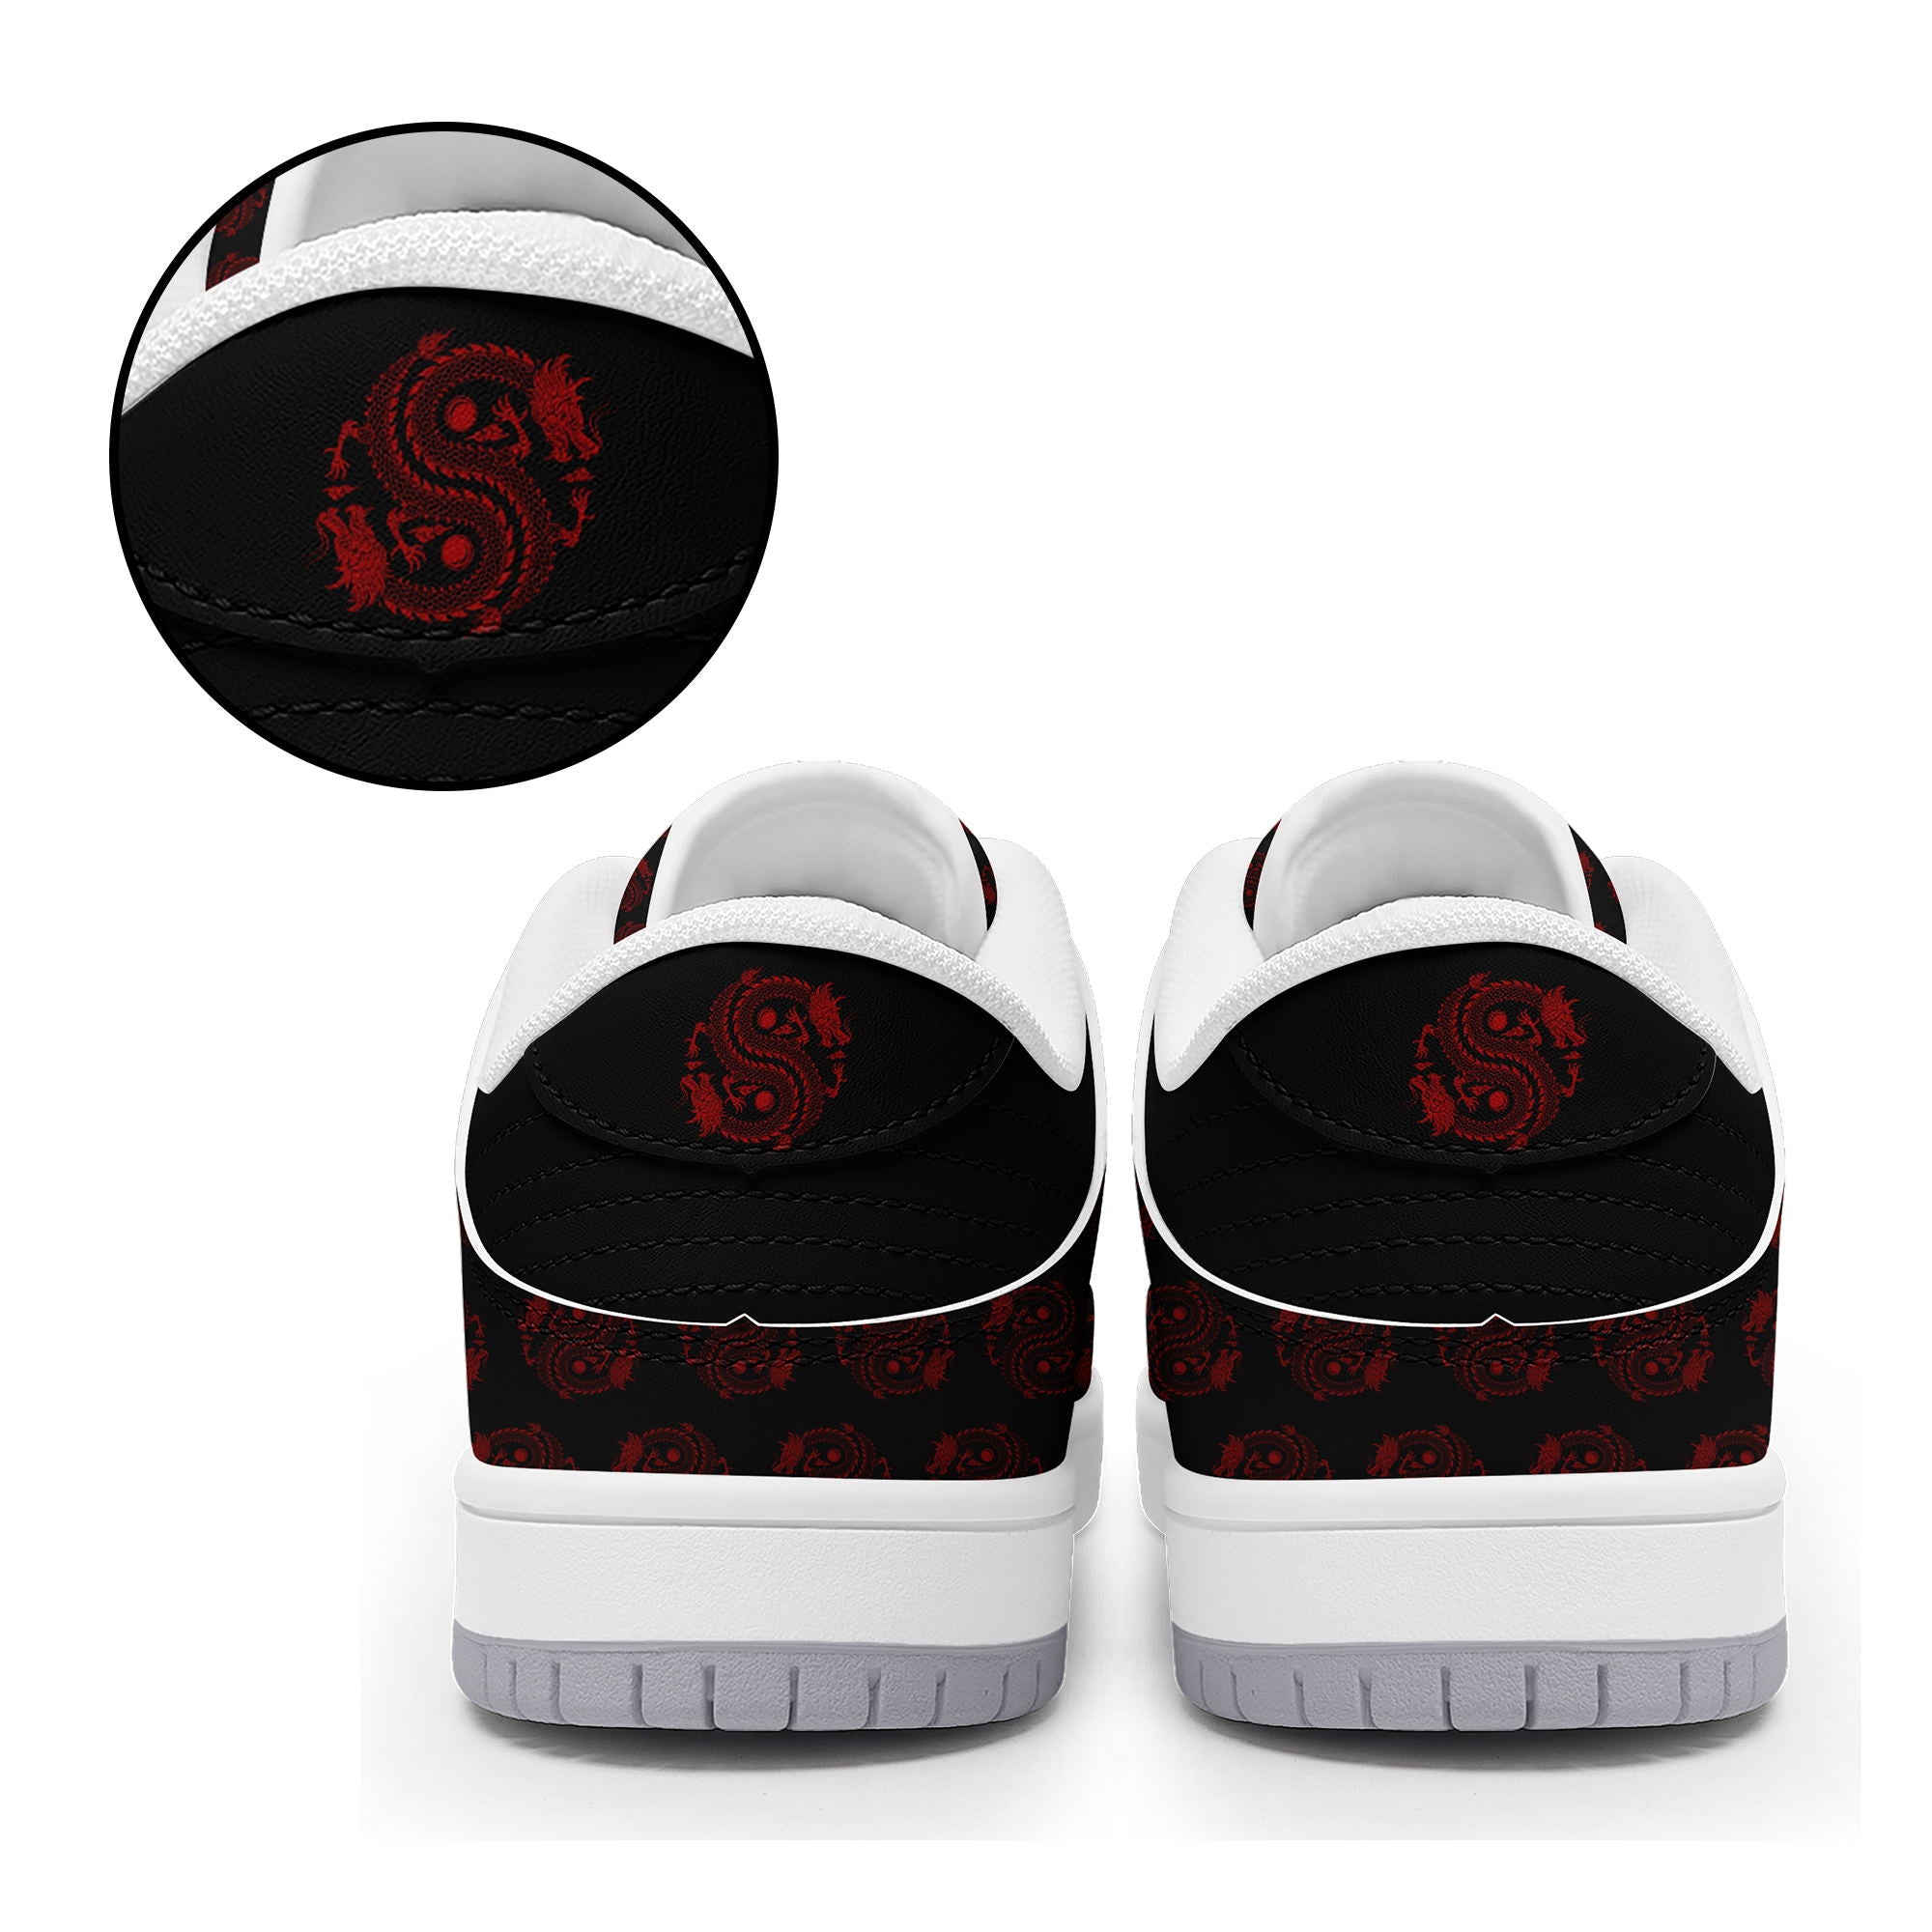 柔性定制打印个性化设计中国龙图腾休闲鞋黑红色白鞋带DK-24025005_9